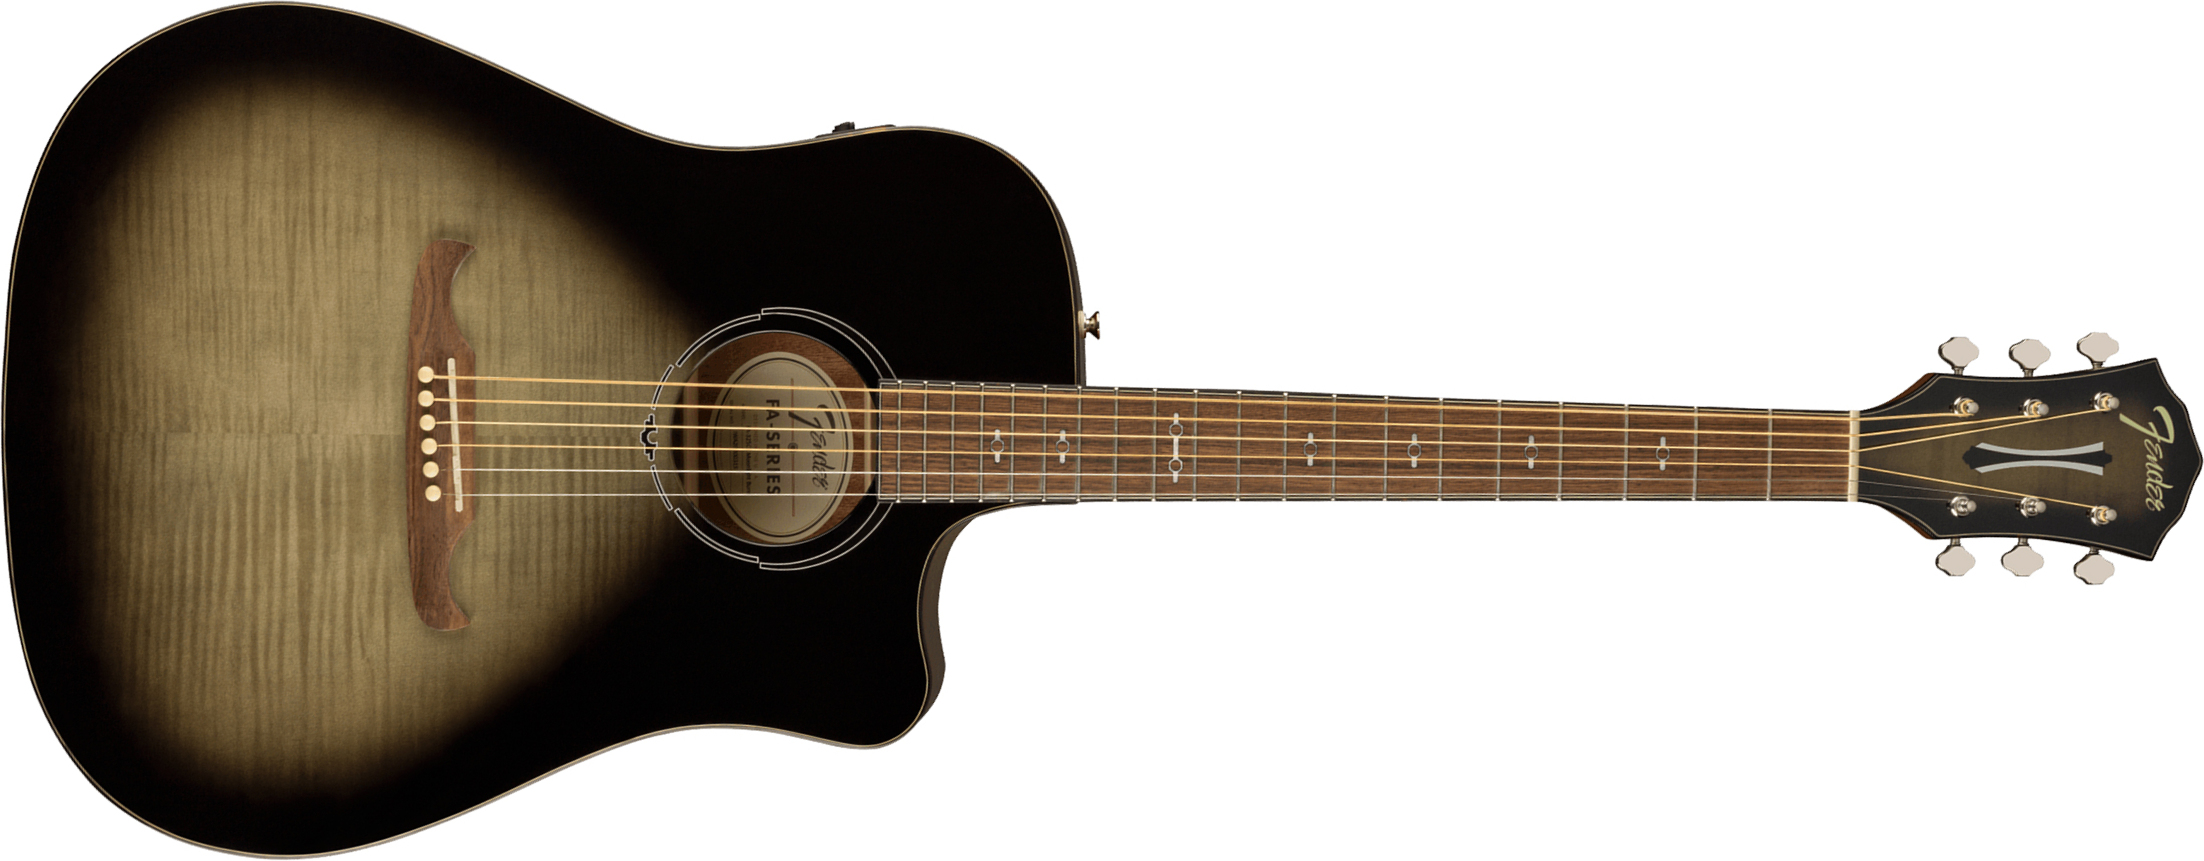 Fender Fa325ce Ltd Dreadnought Cw Erable Lacewood Lau - Moonlight Burst - Electro acoustic guitar - Main picture